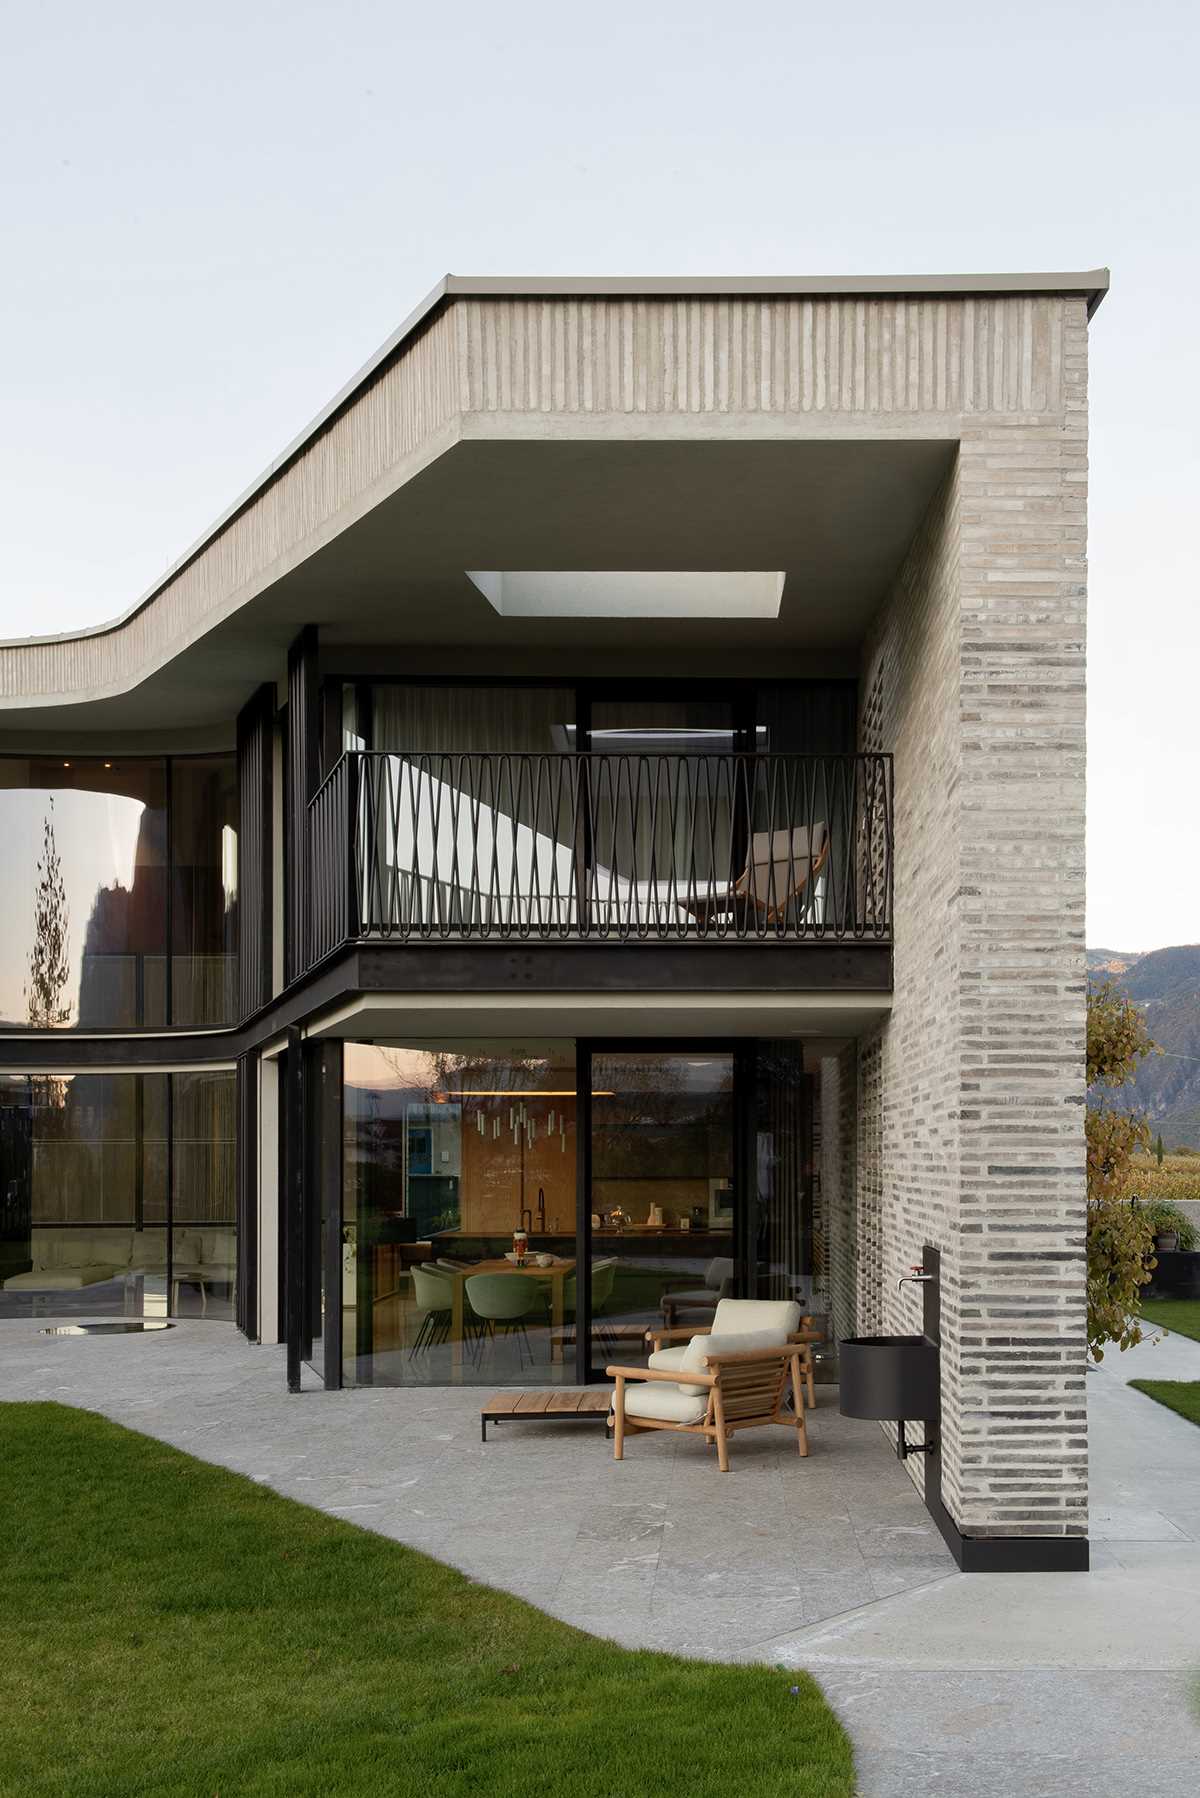 A modern home features handmade elongated bricks ranging from dark to light.